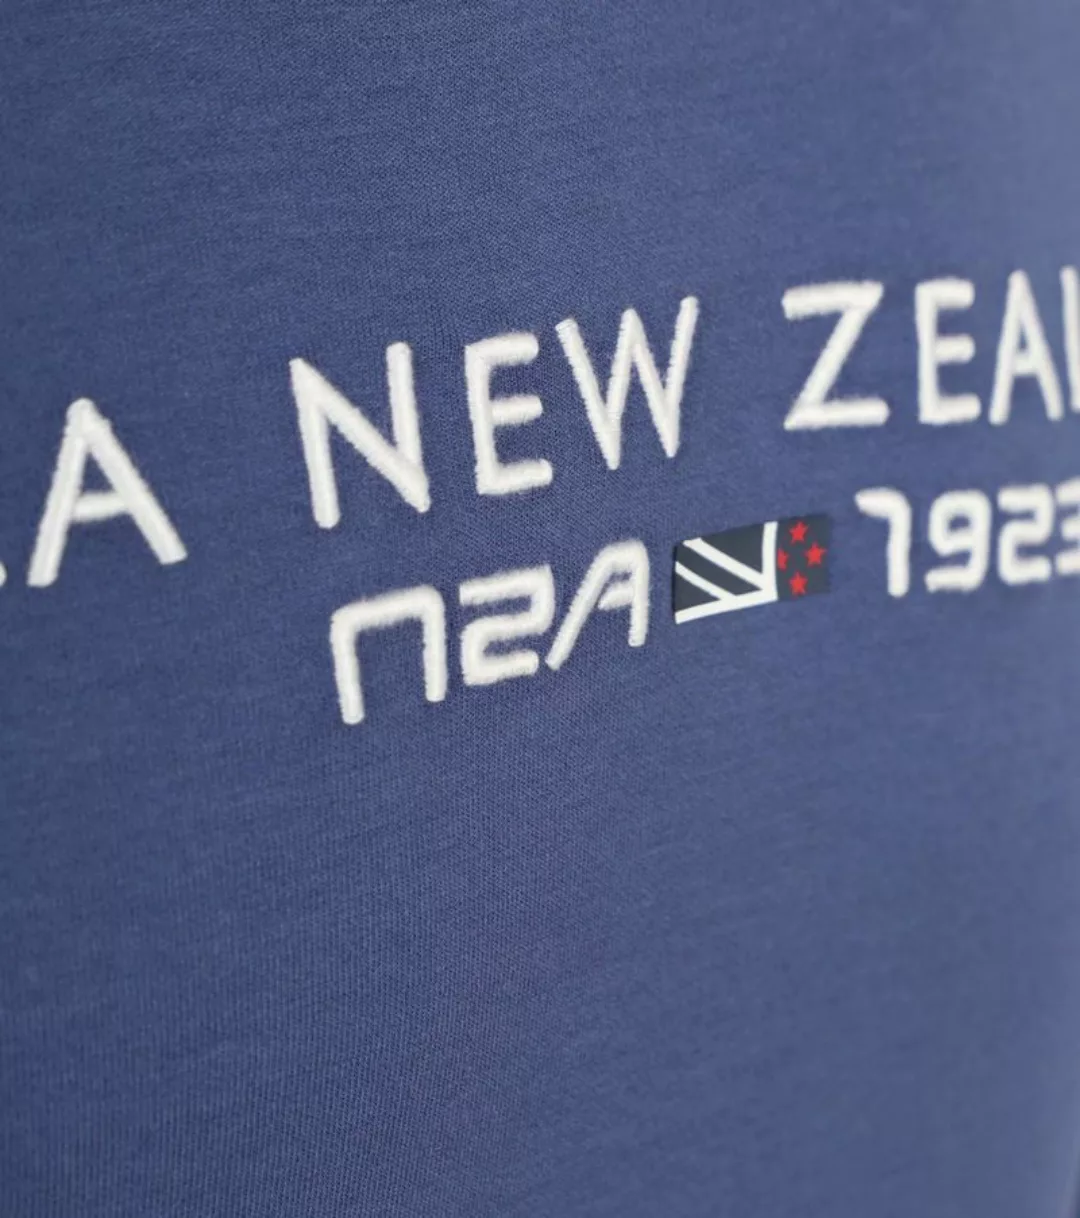 NZA Half Zip Pullover Mirror Tarn Navy - Größe 3XL günstig online kaufen